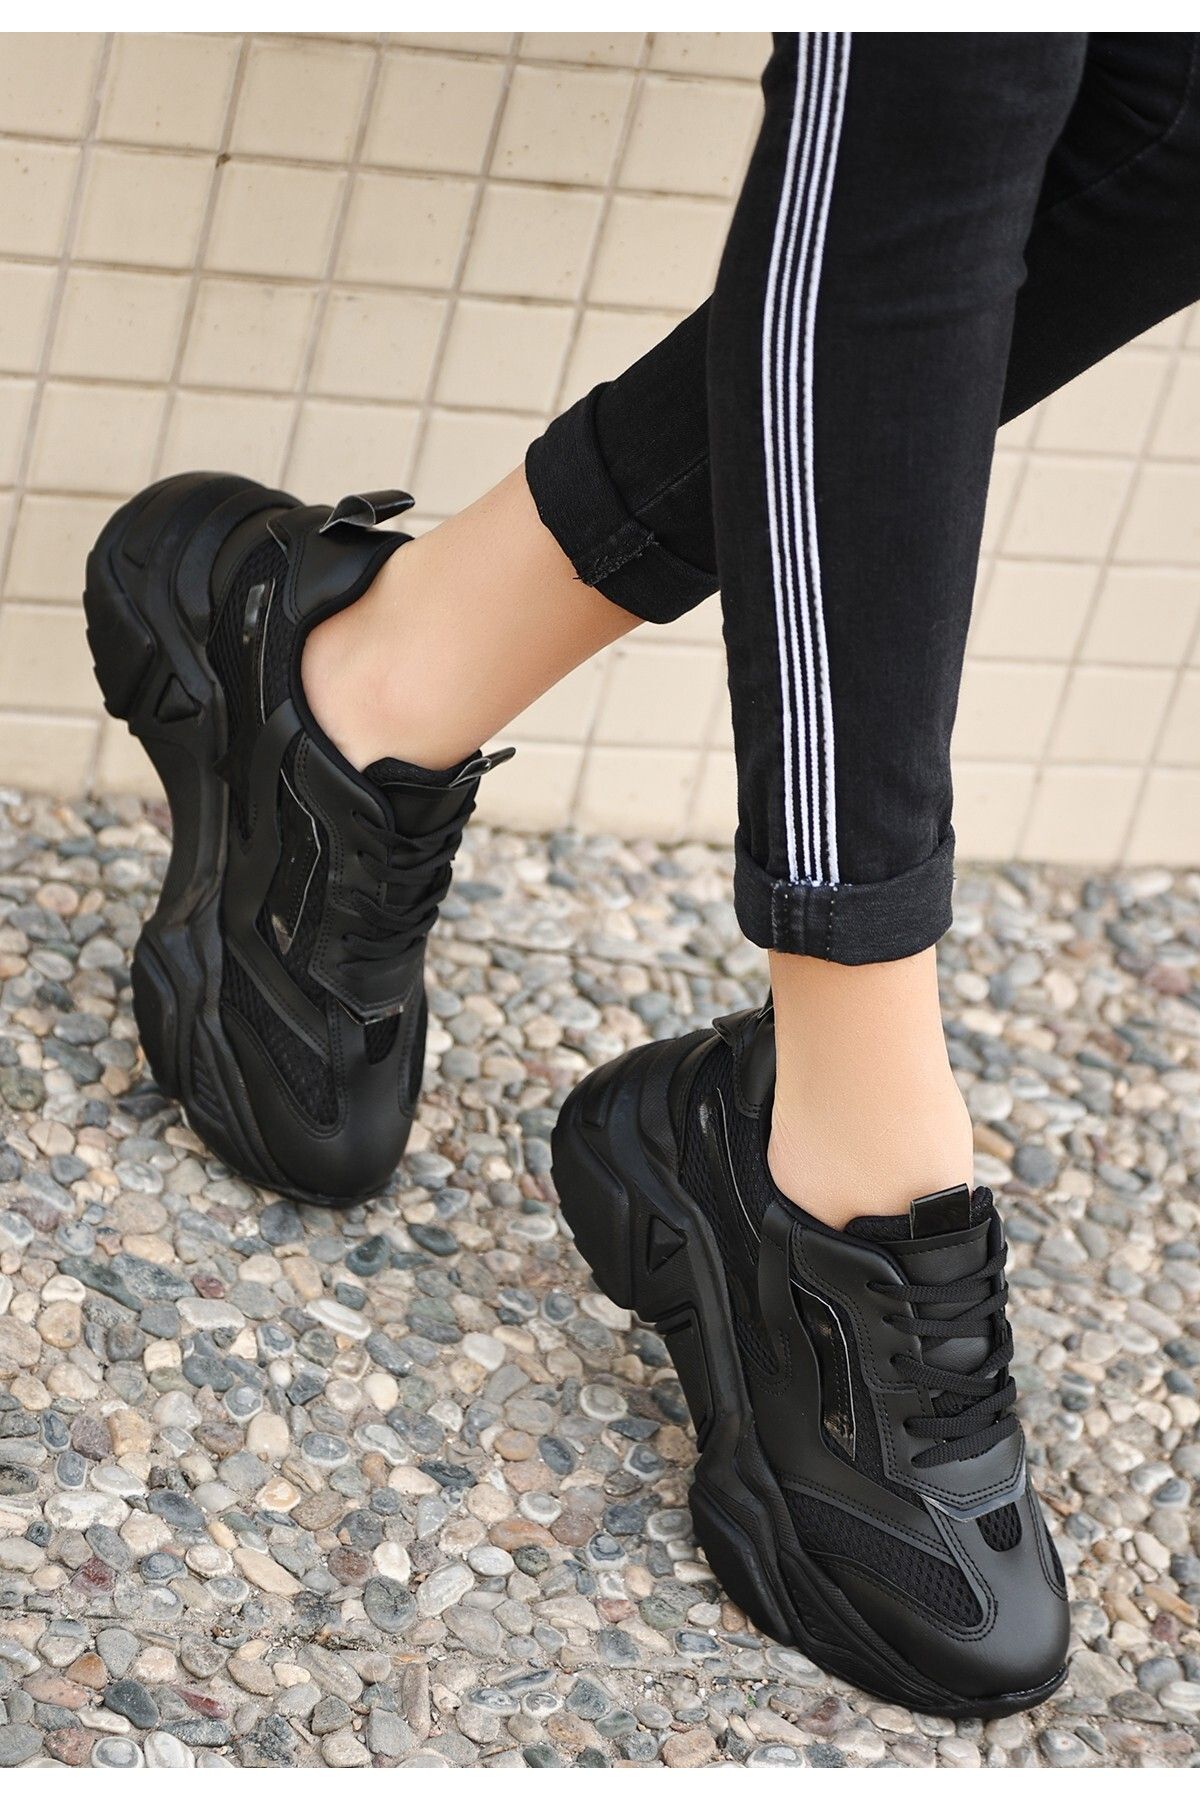 REKA MODA Dica Siyah Cilt Bağcıklı Spor Ayakkabı